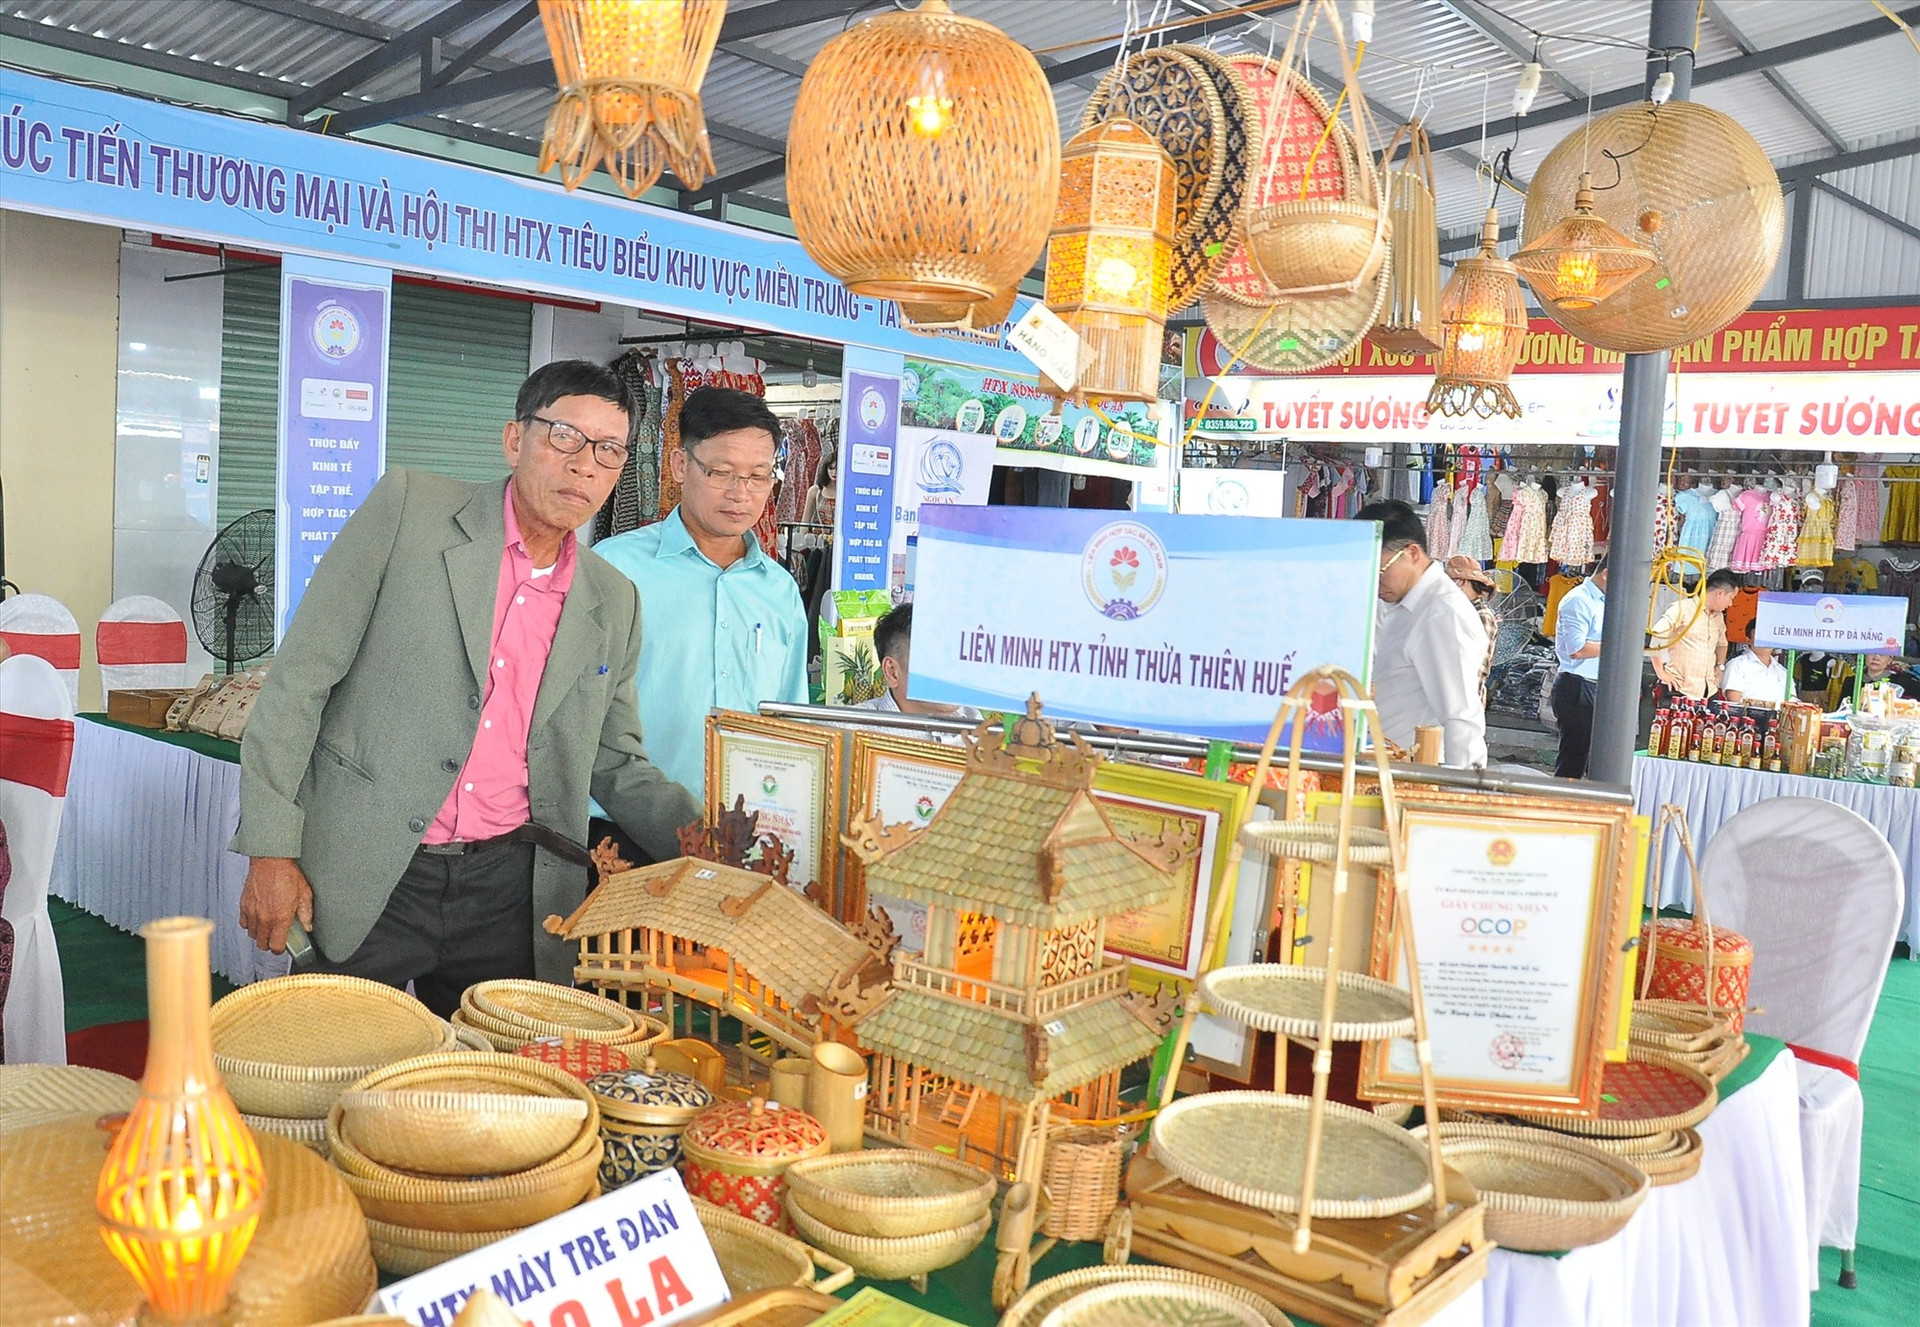 Sản phẩm thủ công mỹ nghệ của HTX tại tỉnh Thừa Thiên Huế giới thiệu tại ngày hội. Ảnh: ĐAN LINH